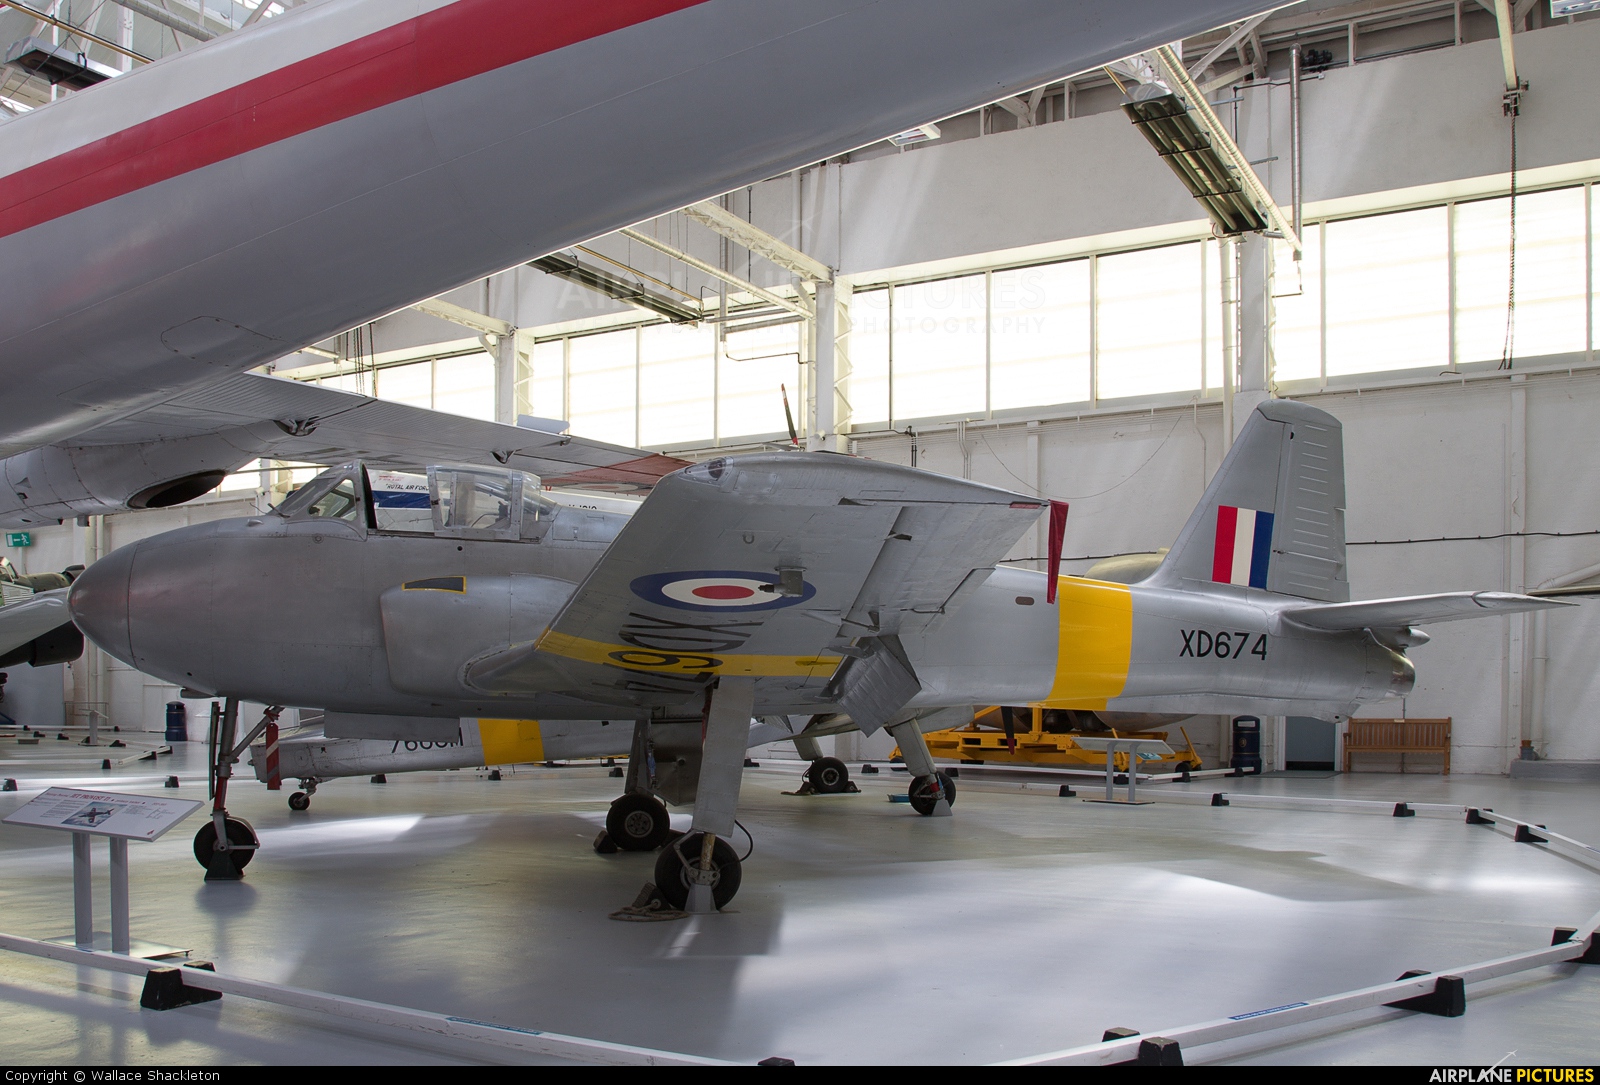 Royal Air Force XD674 aircraft at Cosford - RAF Museum